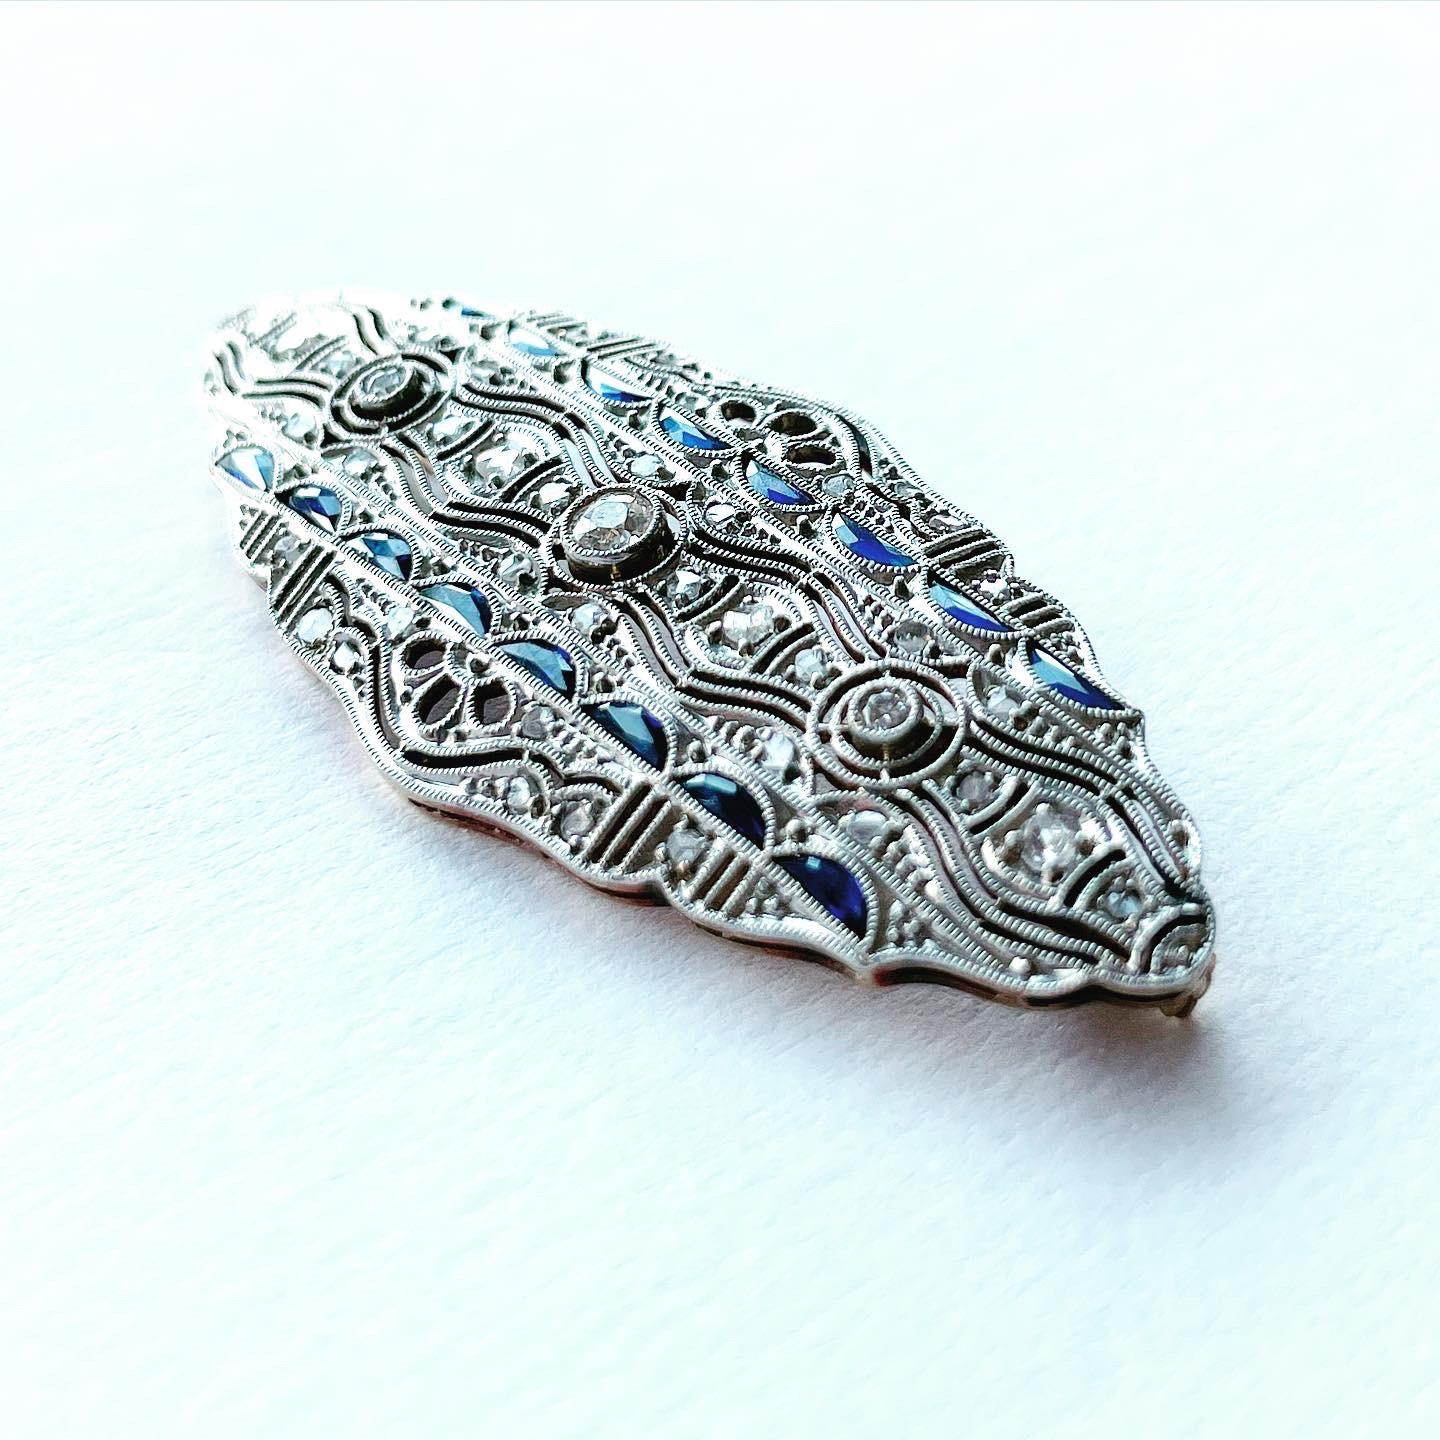 Diese Art-Deco-Brosche mit Diamanten und Saphiren ist der Inbegriff des Deco-Stils. Die Symmetrie, die Geometrie, die antiken Diamanten und Saphire, alles an dieser Brosche ist das, wofür Art-Déco-Schmuck bekannt ist. 

Die Brosche enthält 3 alte